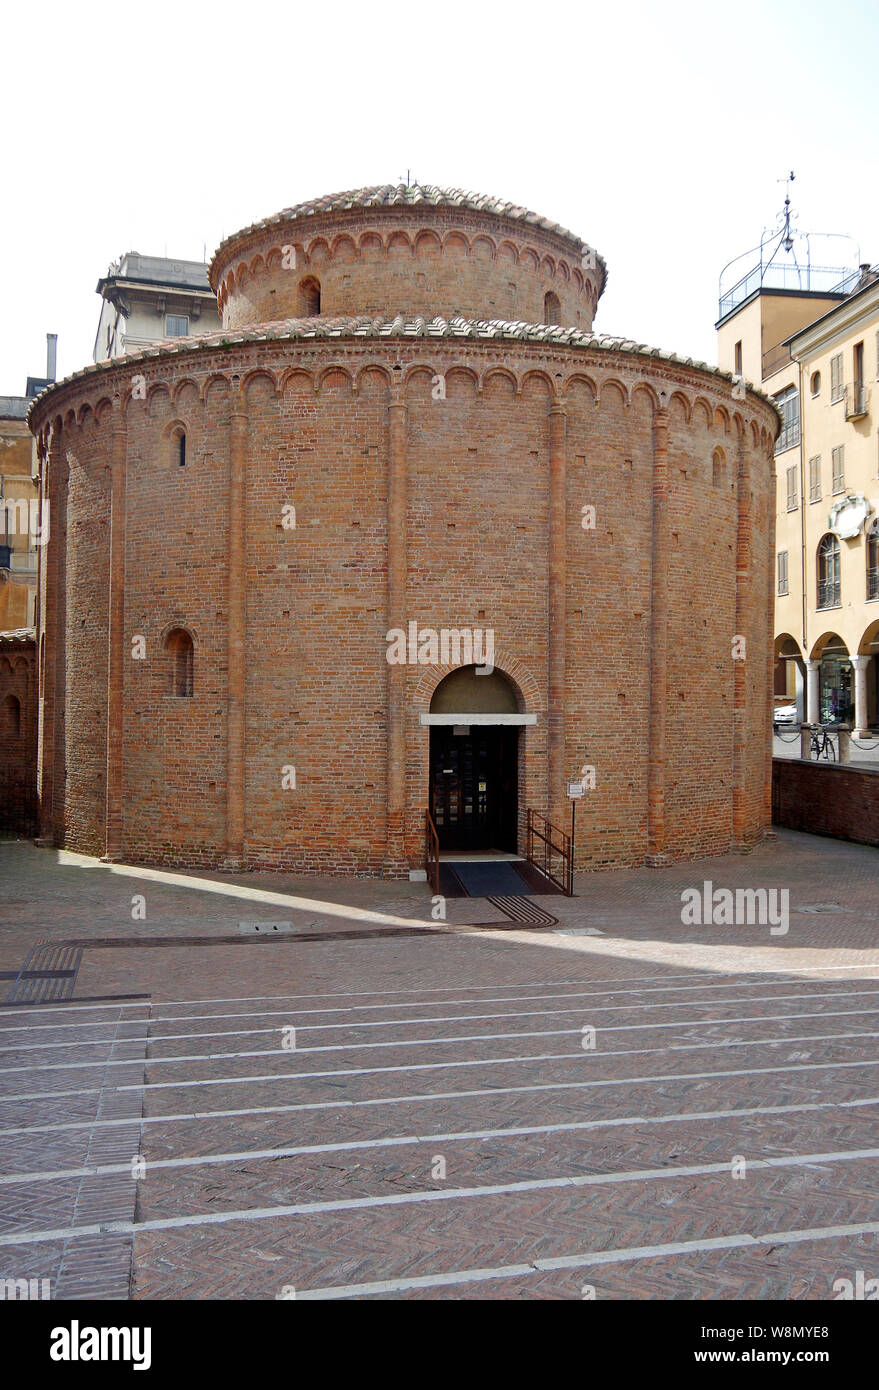 La Rotonda di S Lorenzo, una piccola chiesa a pianta circolare, costruita in mattoni, nel tardo xi C in Lombarda in stile romanico, a Mantova, Italia Foto Stock